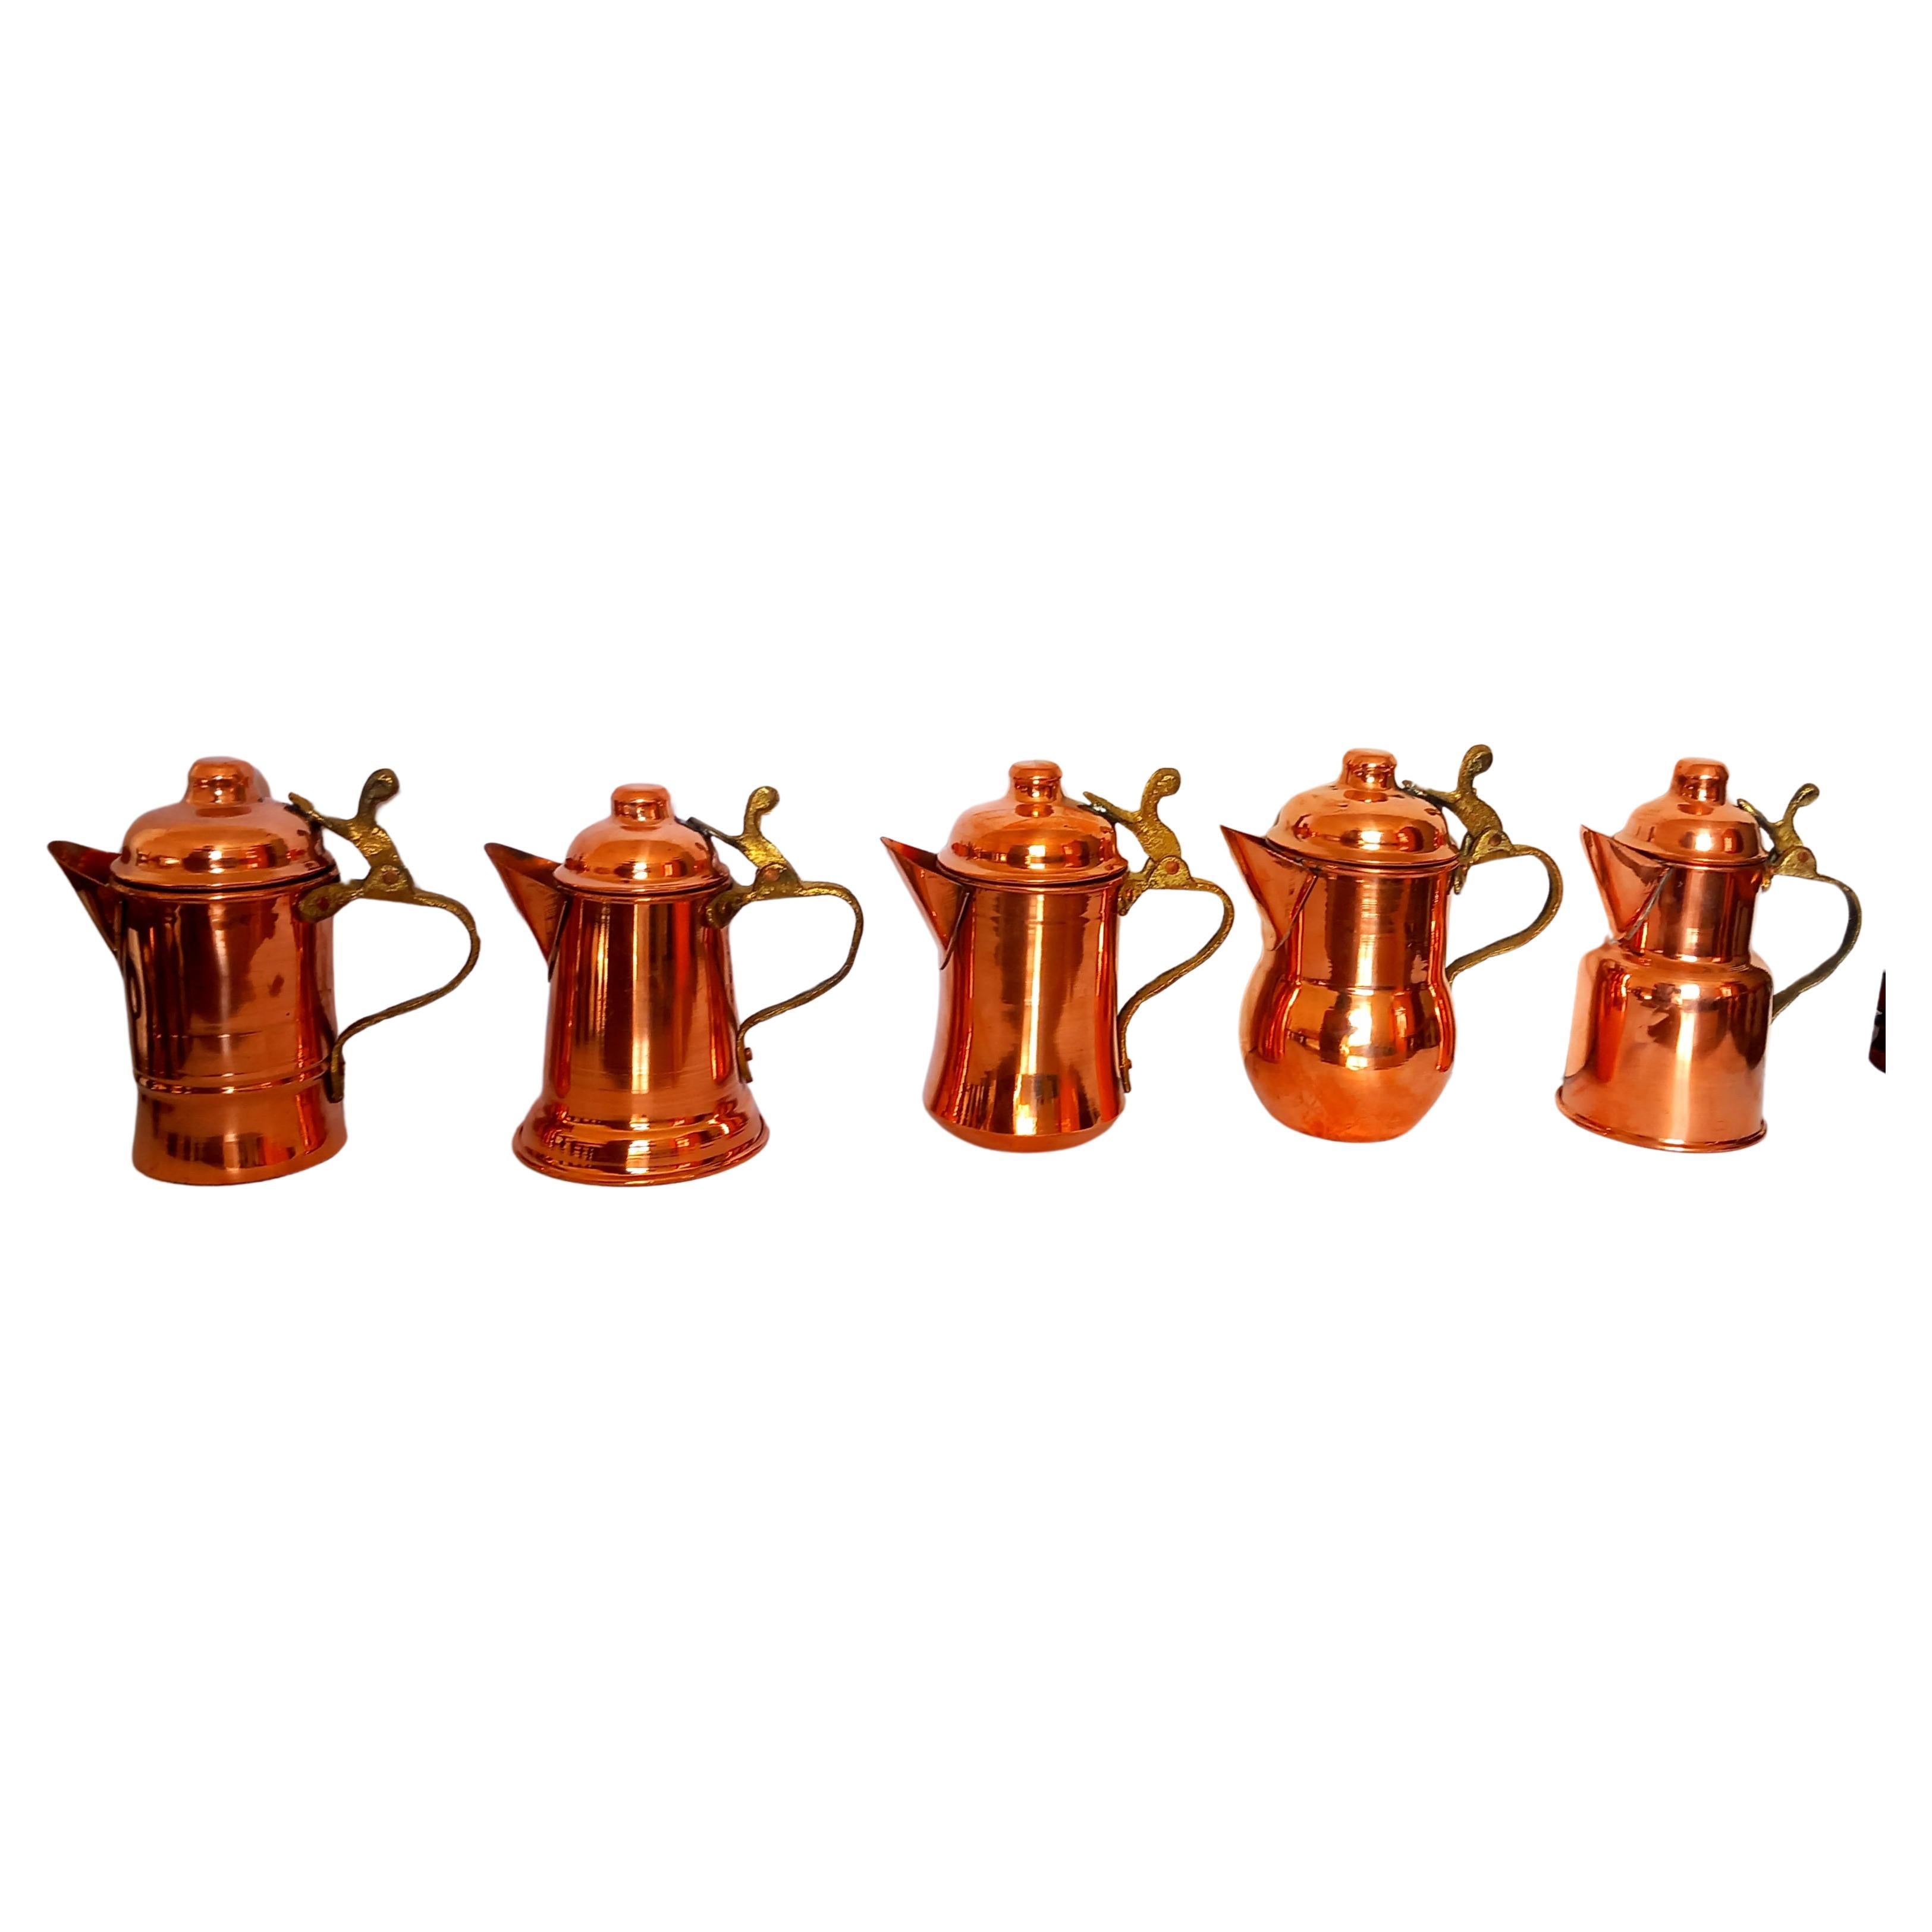  Copper Kitchen Decoration Vintage Coffee Pots Lot of 5 Diferent Design